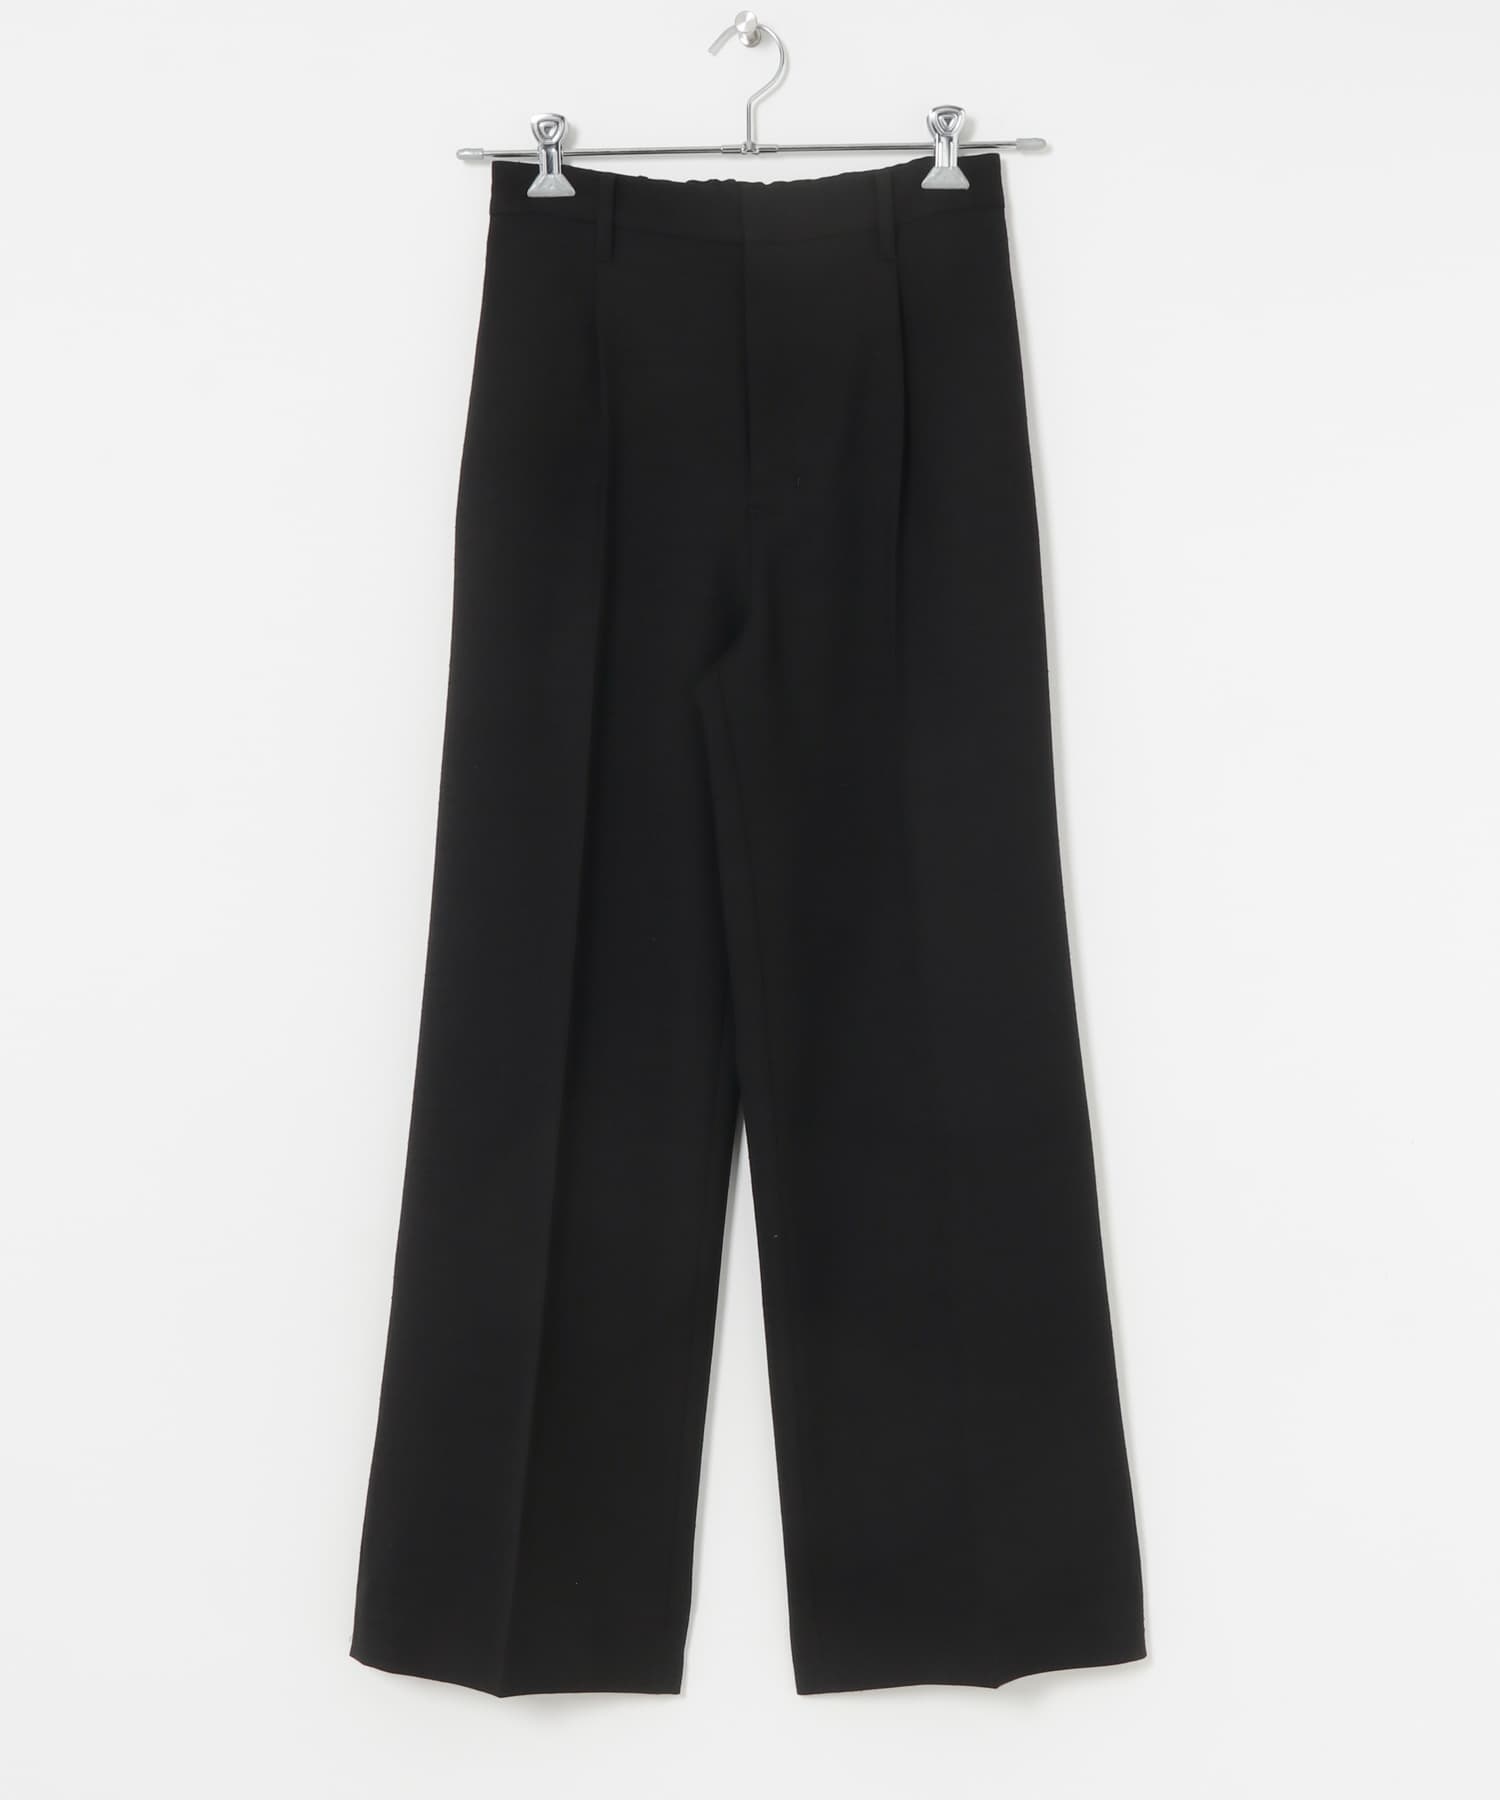 中央壓線直筒褲(黑色-36-BLACK)